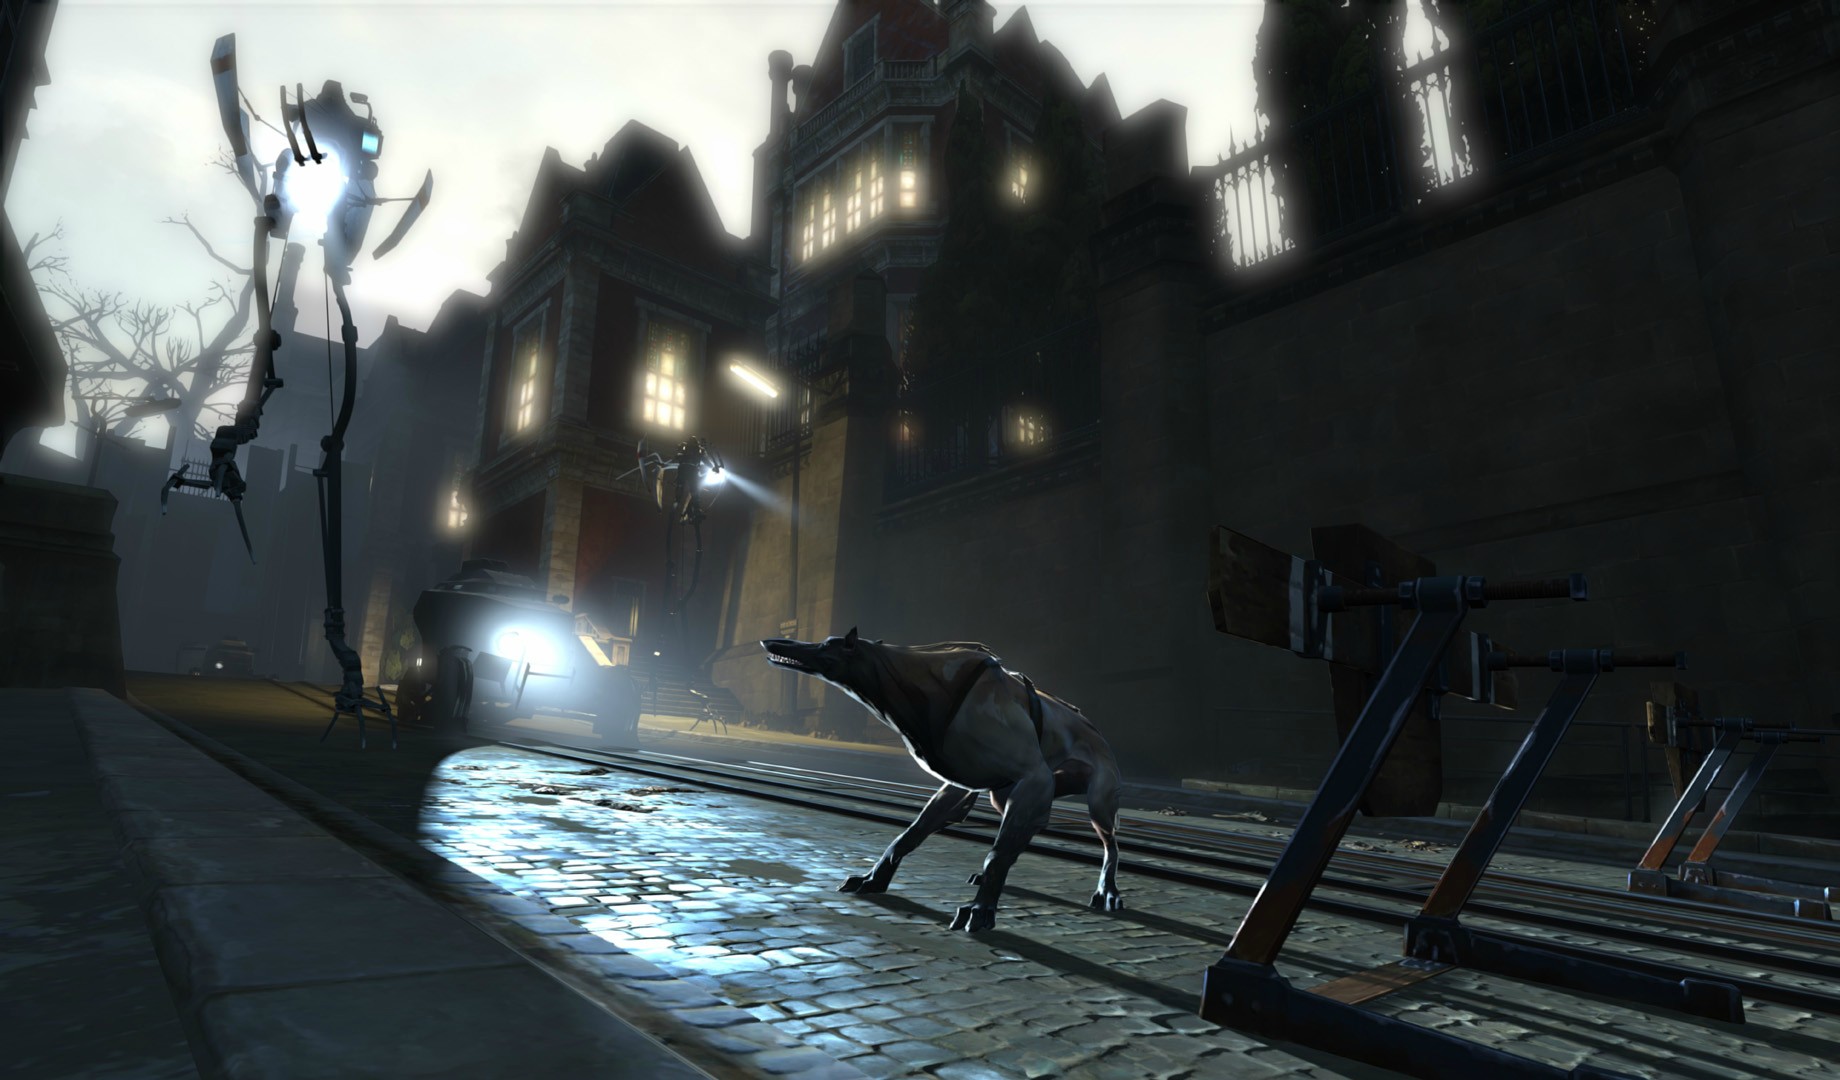 Immagine pubblicata in relazione al seguente contenuto: Bethesda pubblica nuovi screenshots del game Dishonored | Nome immagine: news17892_dishonored_3.jpg